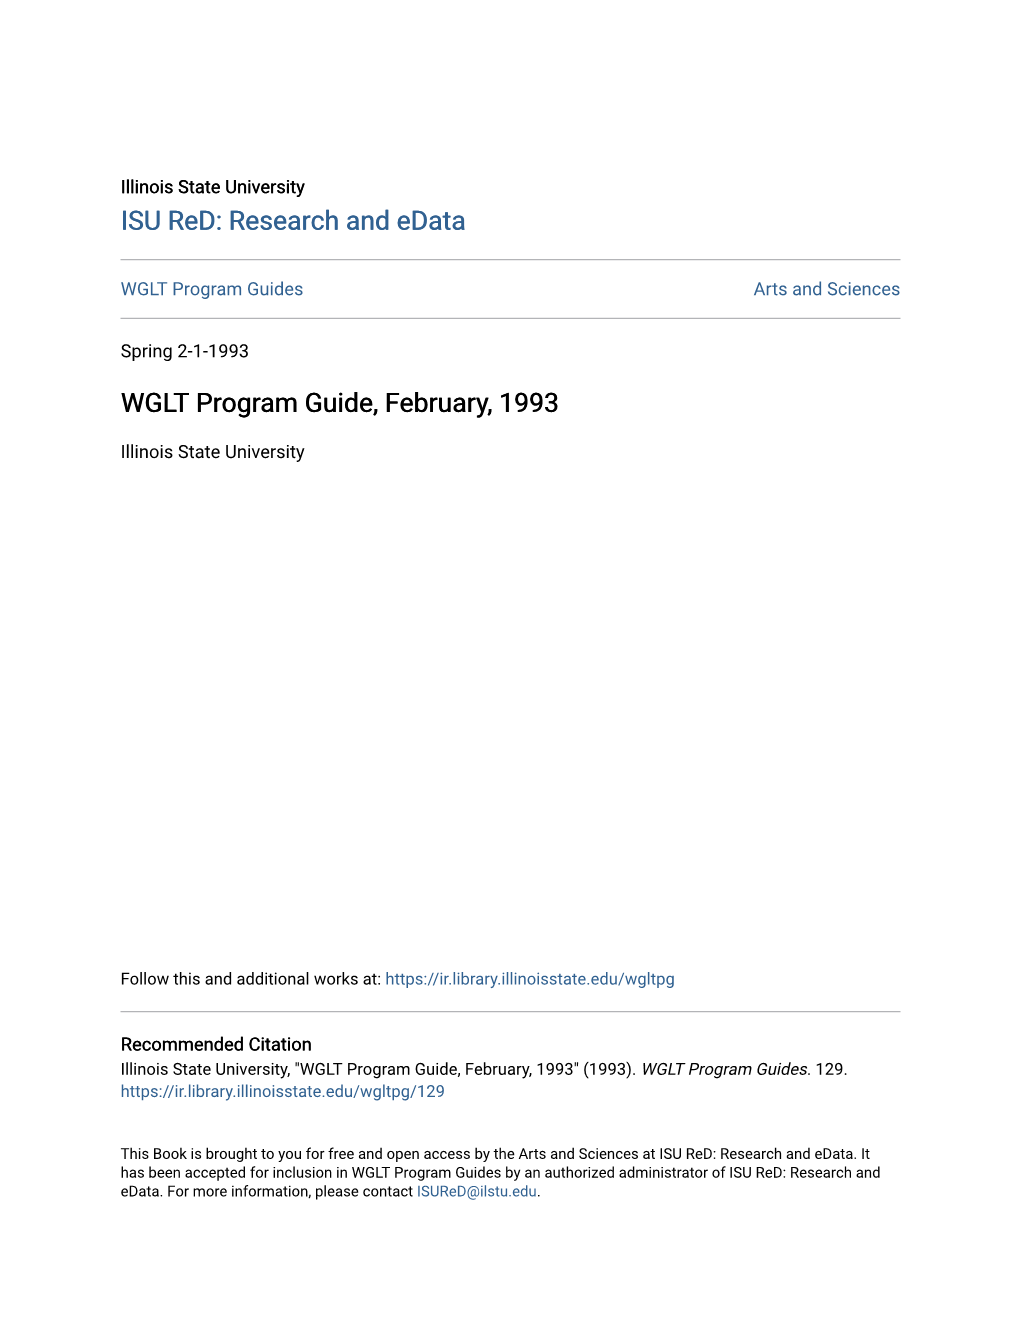 WGLT Program Guide, February, 1993